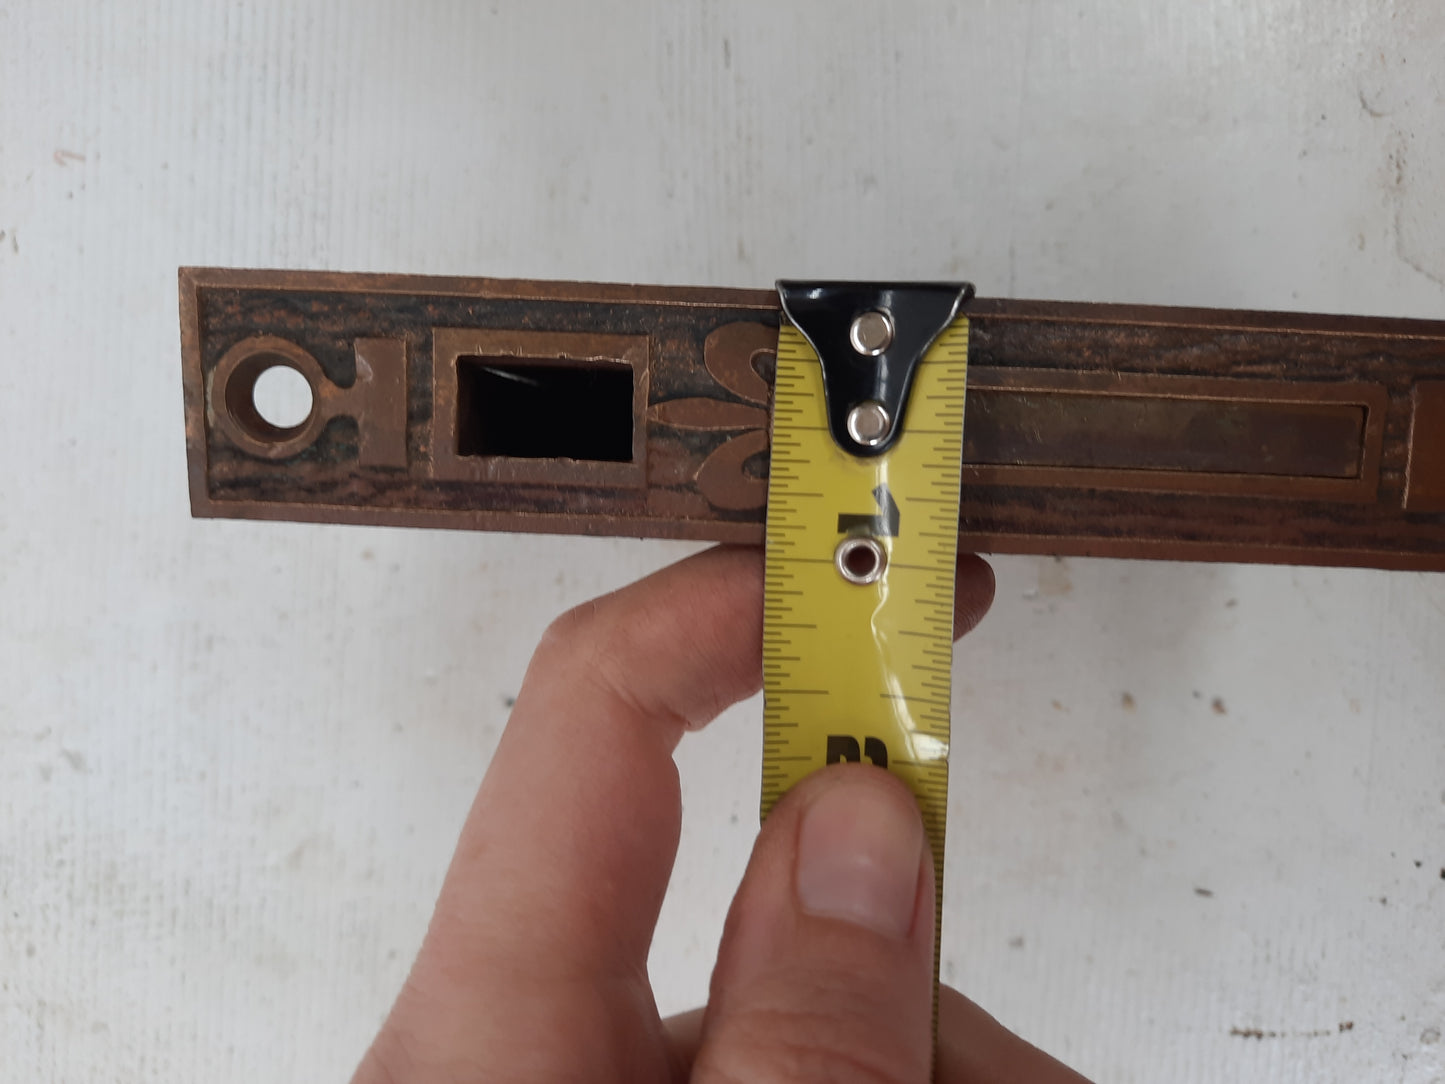 Ornate Single Antique Pocket Door Lock, Rolling Door Lock Set Working Condition 101104